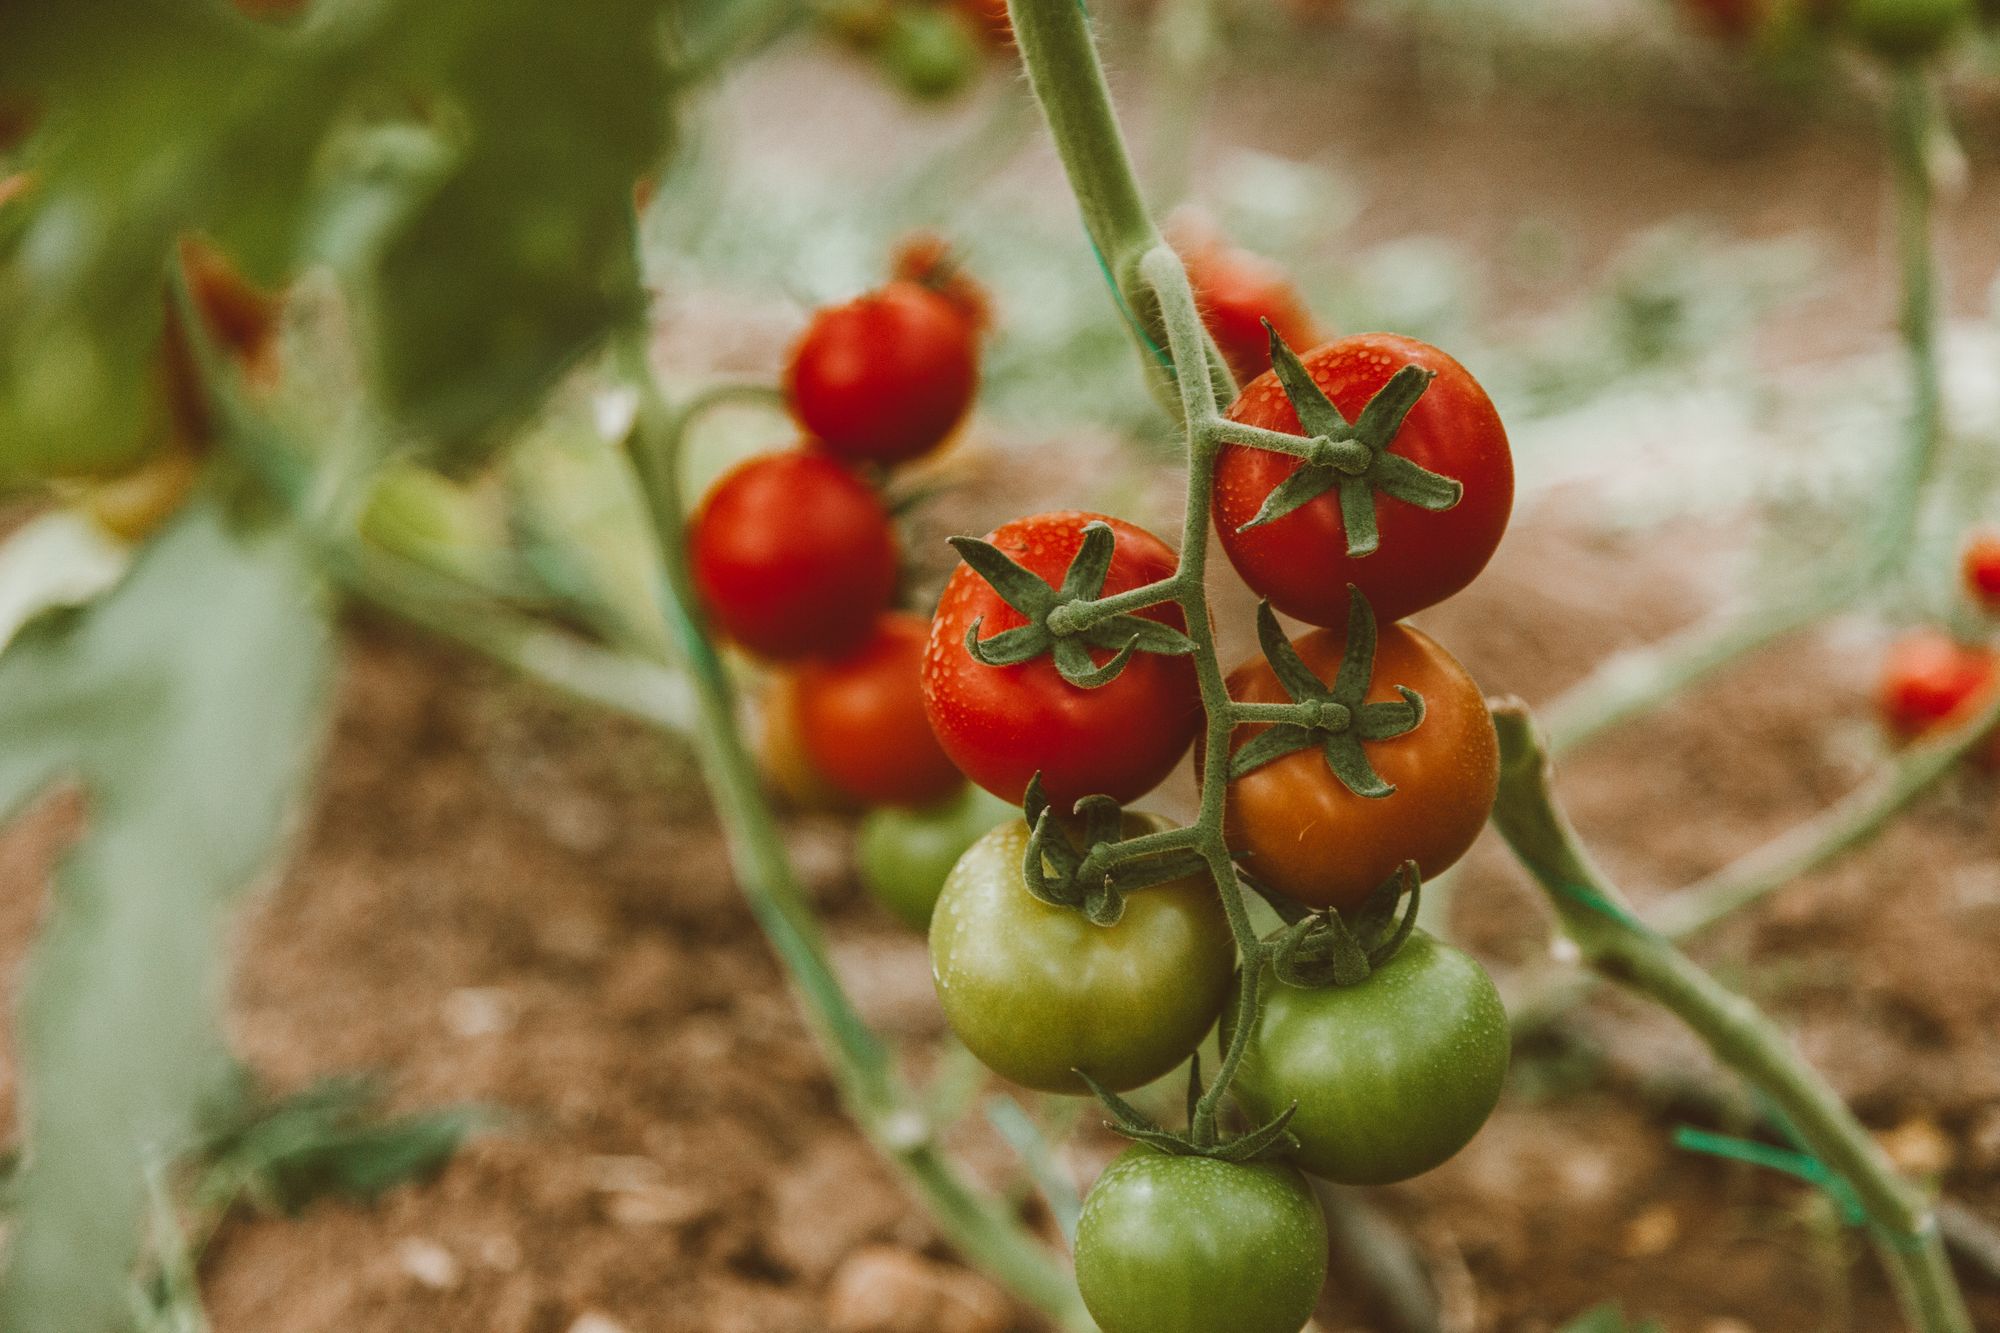 Plody rajčete varují zbytek rostliny při napadení hmyzem